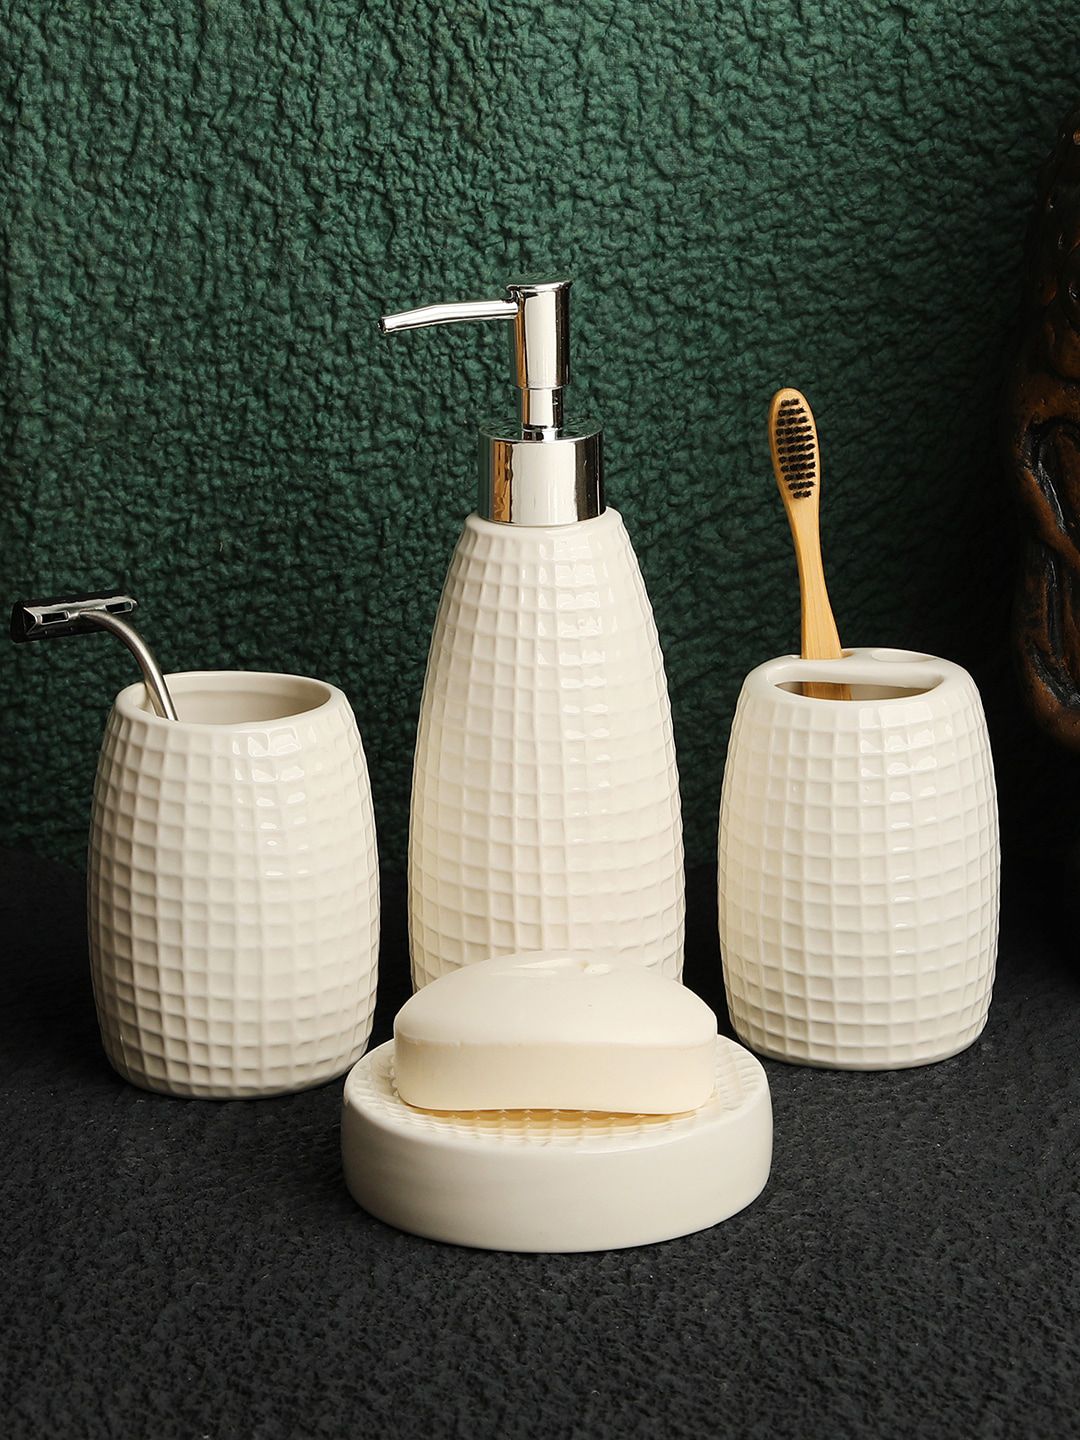 ROMEE Set Of 4 White Textured Ceramic Bathroom Accessories Price in India